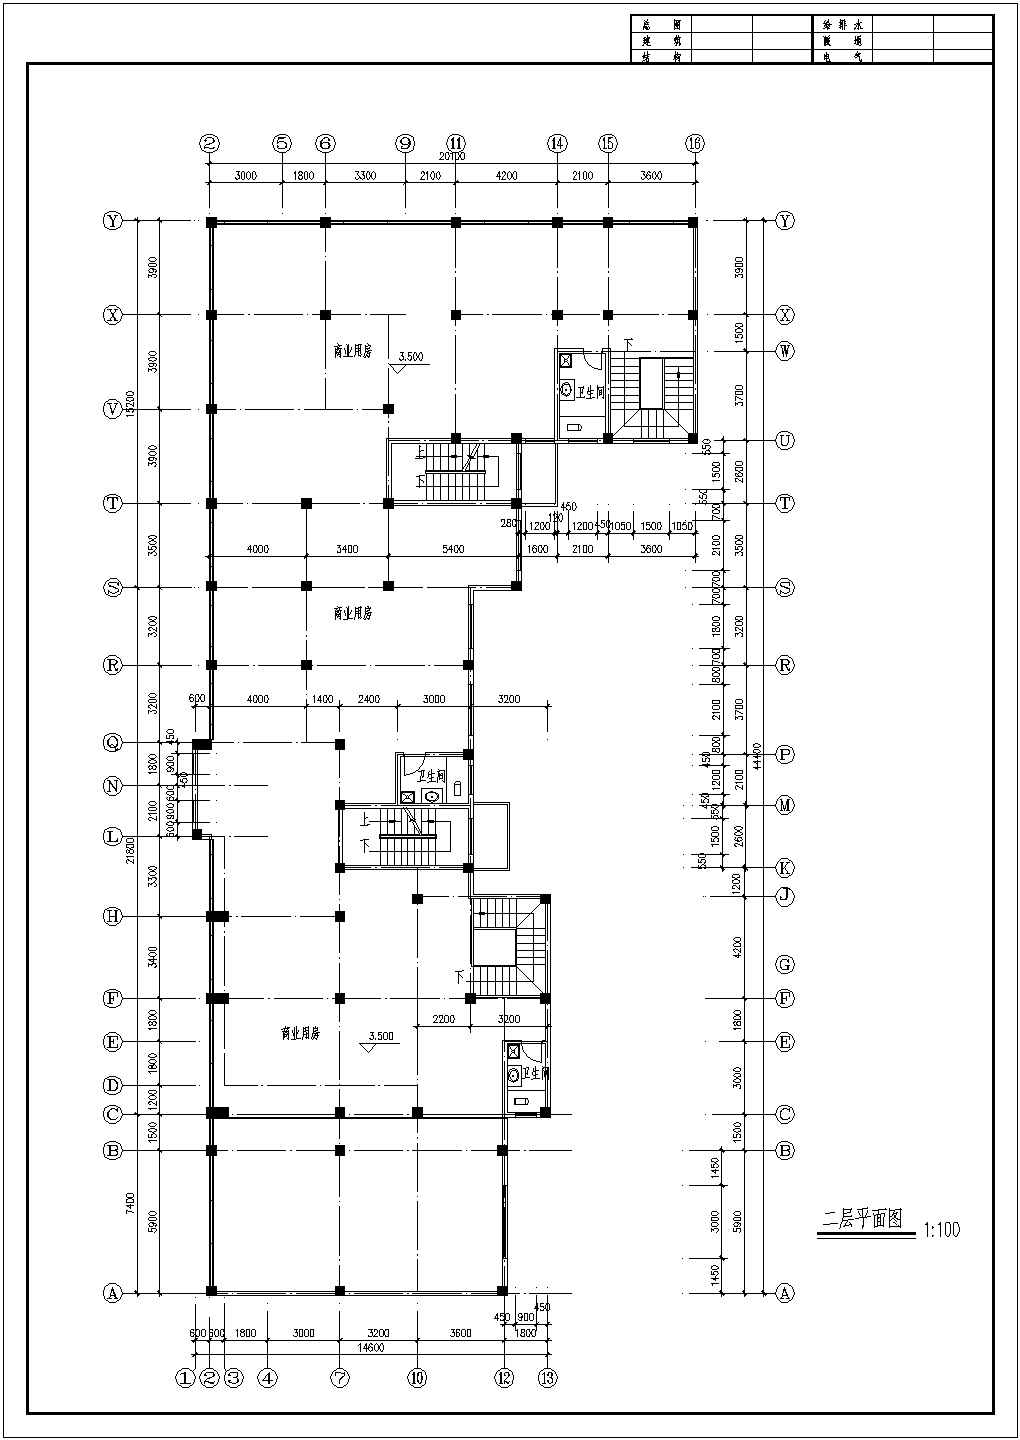 九龙园多层住宅楼平面布置图详细设计施工建筑CAD平面图纸